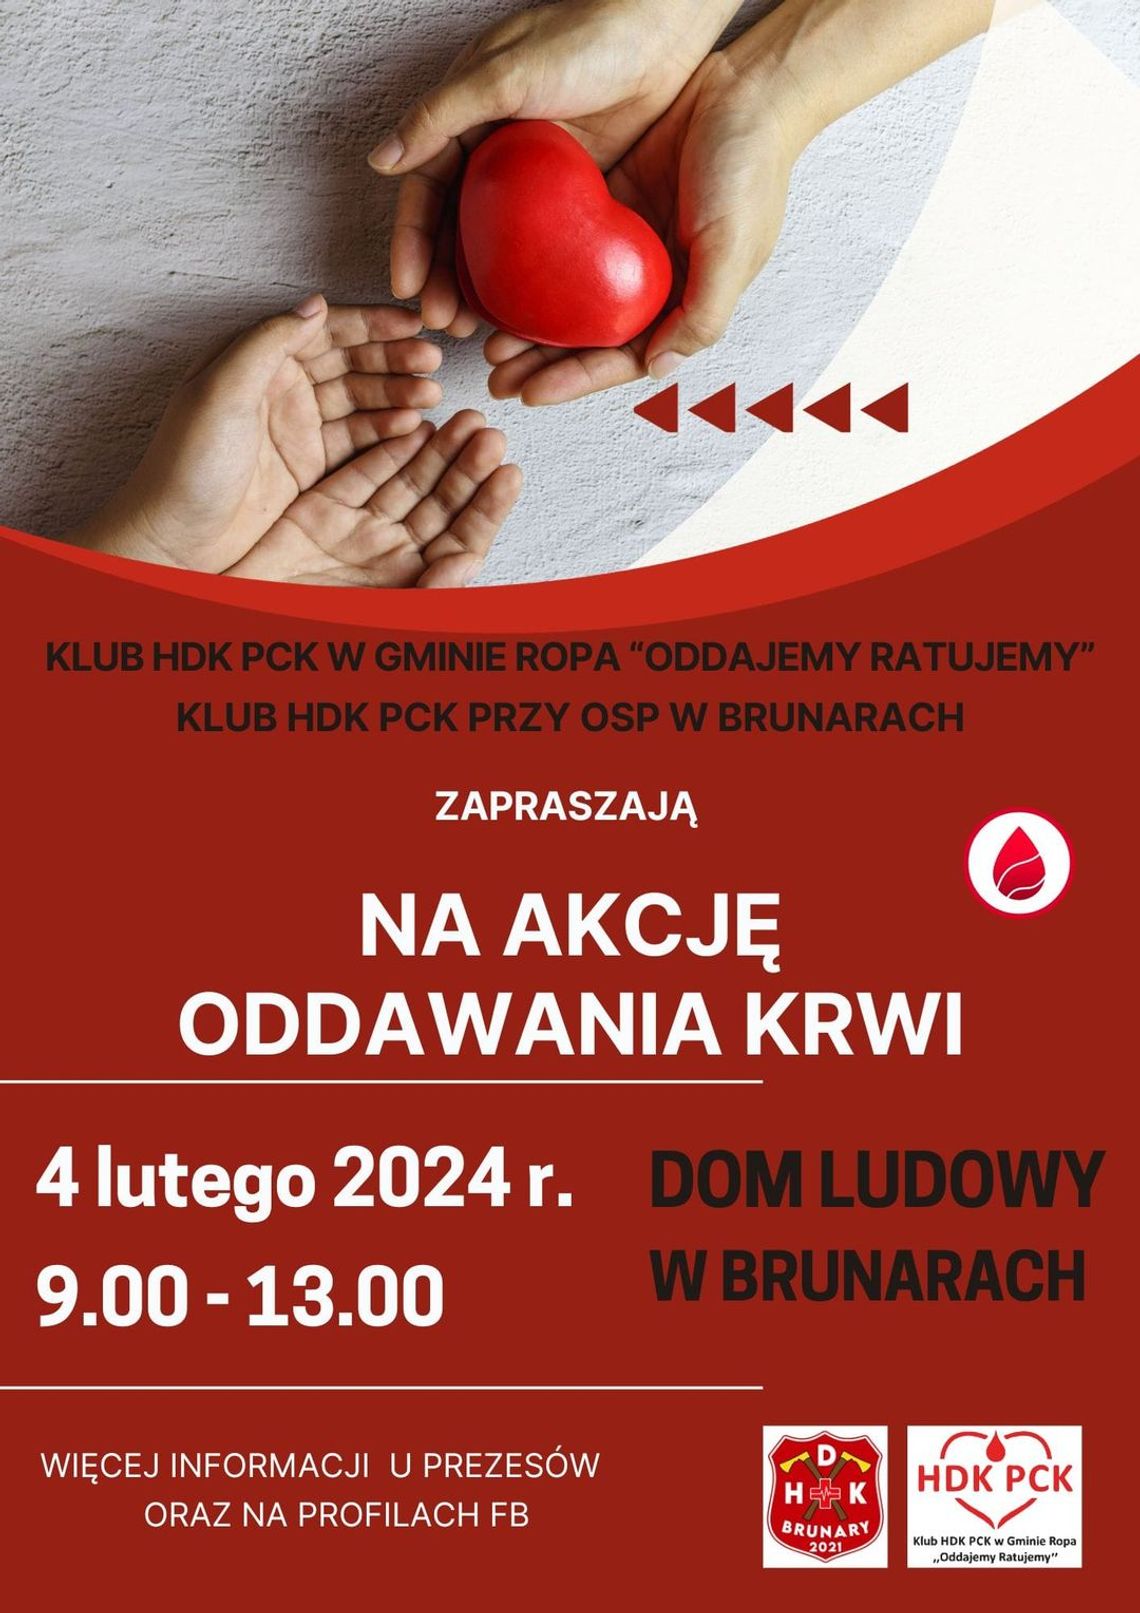 Akcja oddawania krwi w Brunarach | halogorlice.info